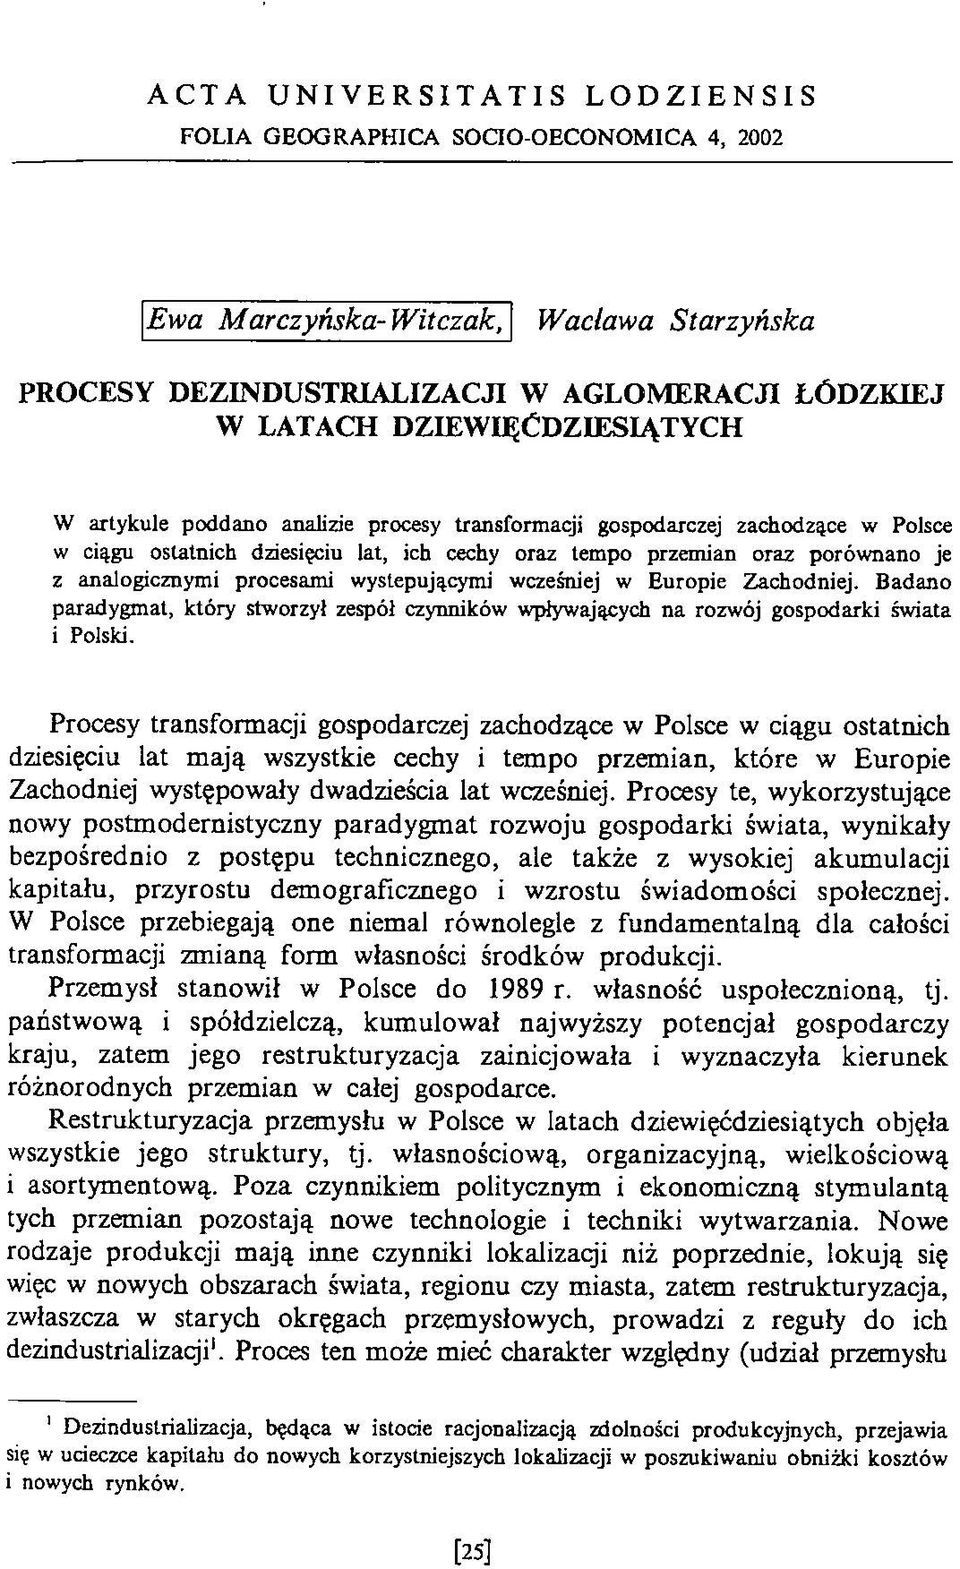 analogicznymi procesami występującymi wcześniej w Europie Zachodniej. Badano paradygmat, który stworzył zespół czynników wpływających na rozwój gospodarki świata i Polski.